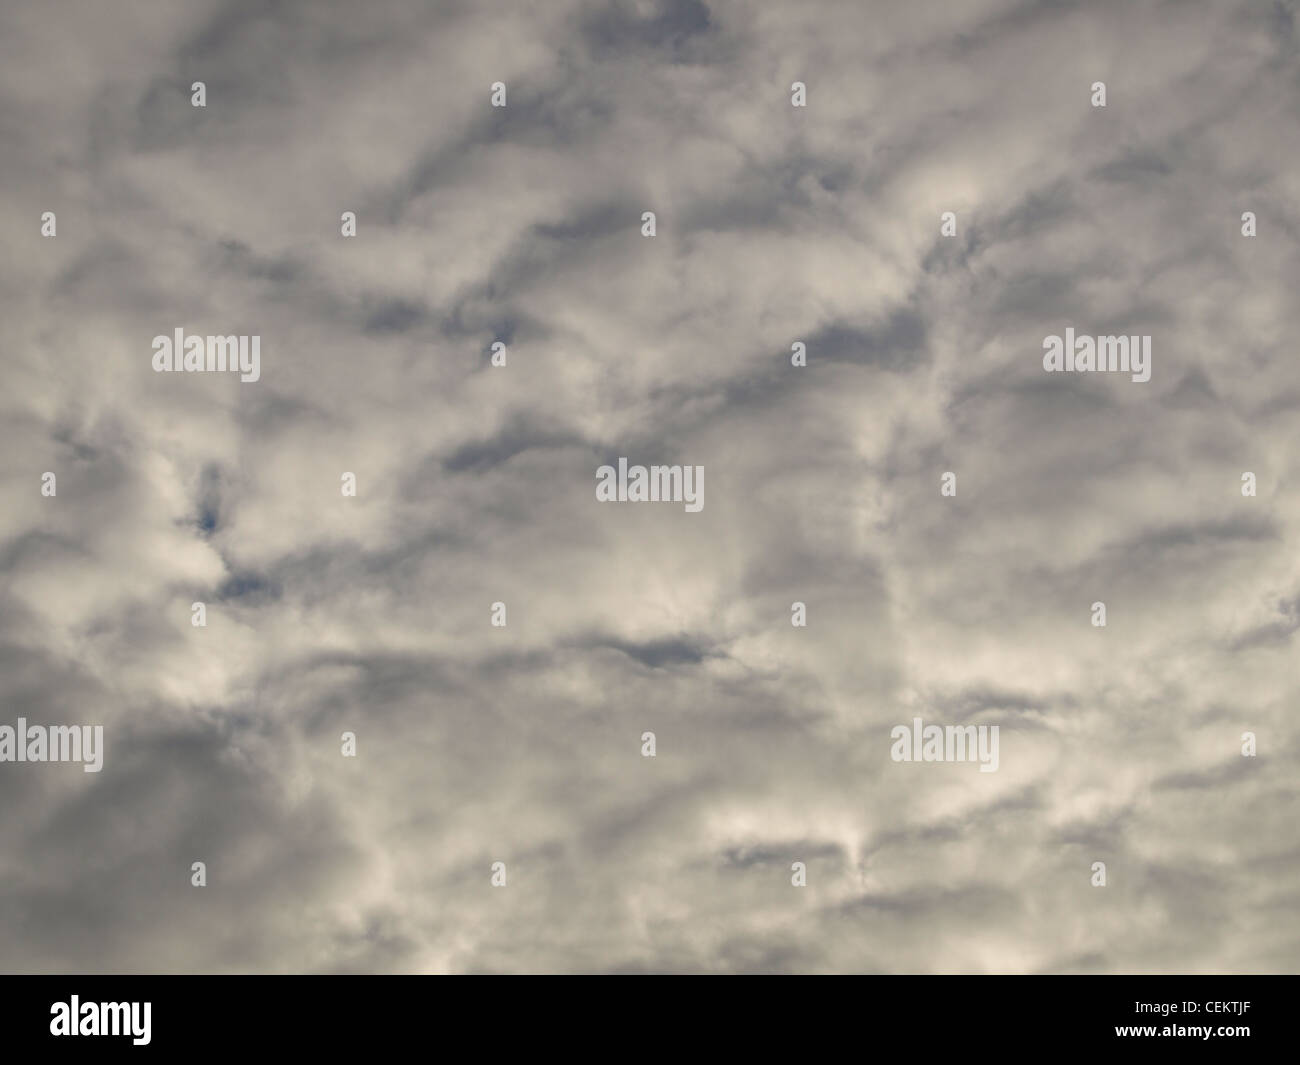 Mistica grigio nuvole / graue mystische Wolken Foto Stock